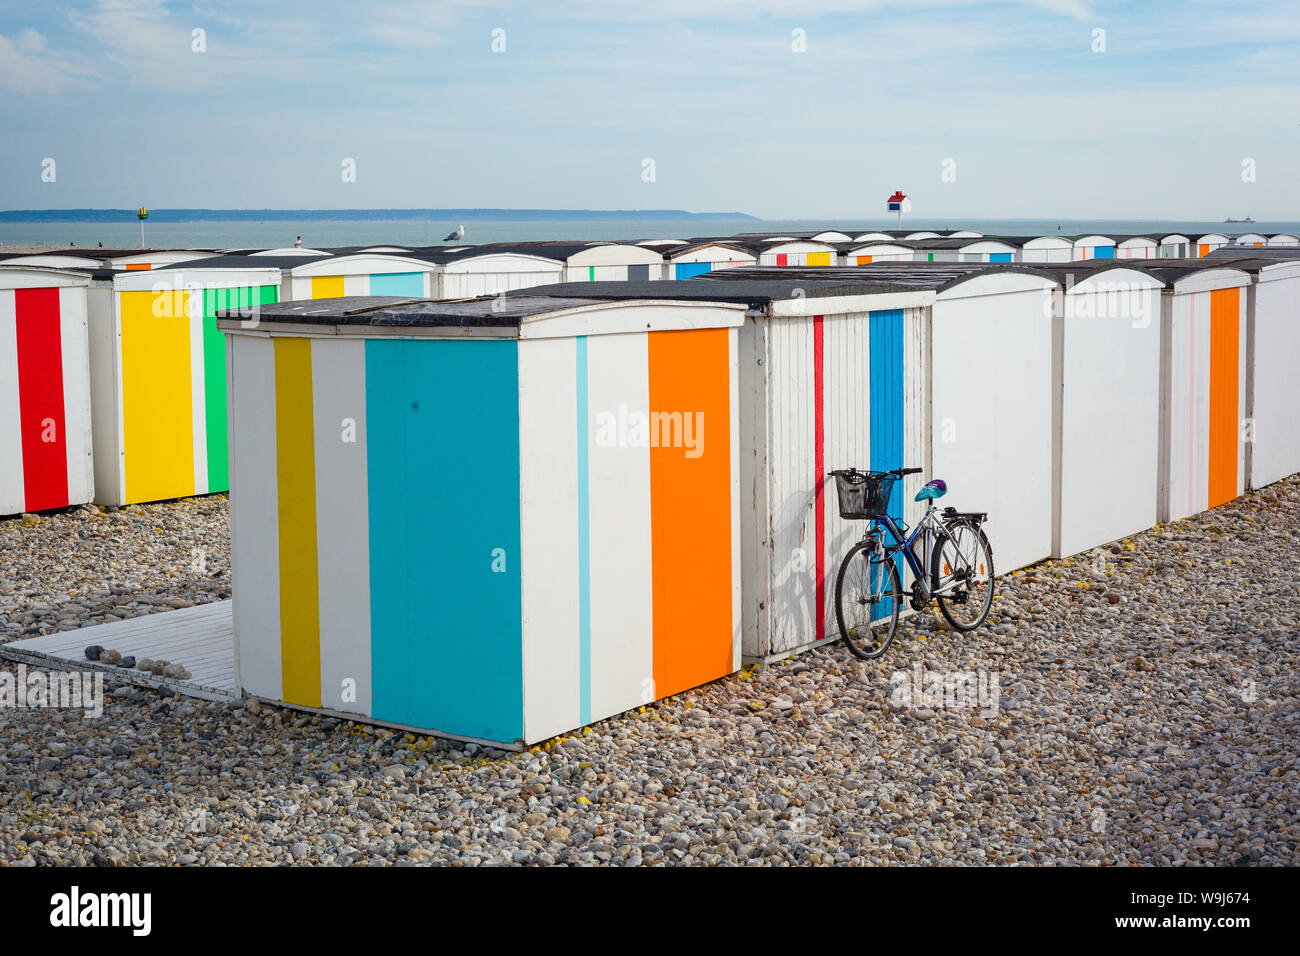 Un vélo se presse contre cabines colorées à Sainte Adresse, Normandie, France Banque D'Images